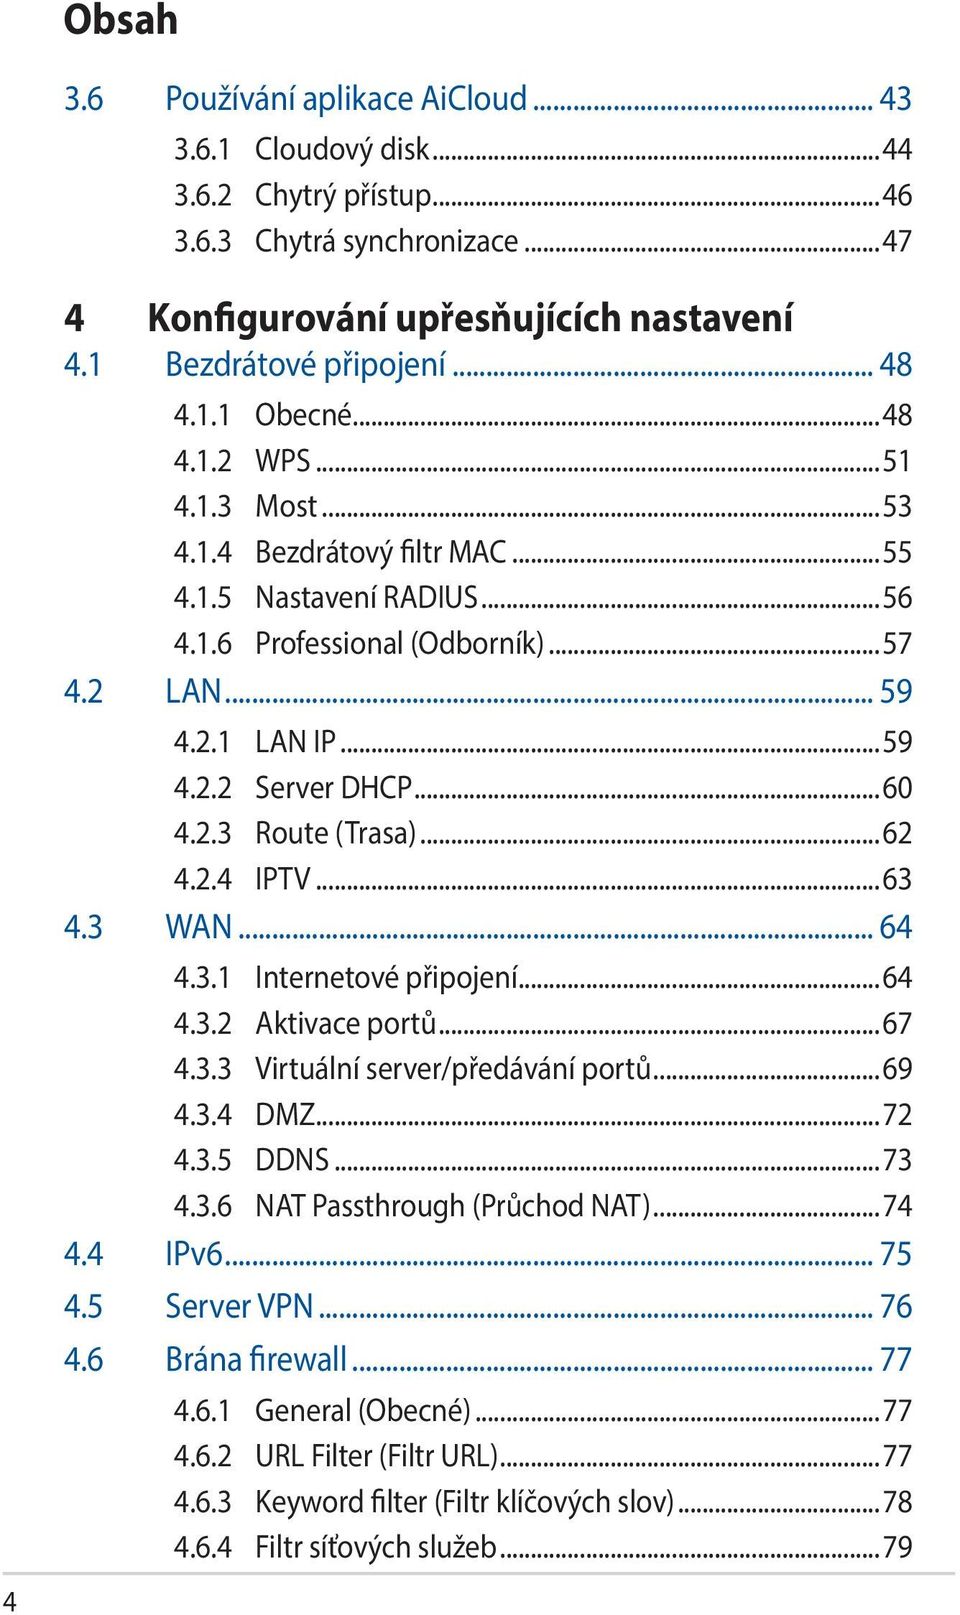 2.3 Route (Trasa)...62 4.2.4 IPTV...63 4.3 WAN... 64 4.3.1 Internetové připojení...64 4.3.2 Aktivace portů...67 4.3.3 Virtuální server/předávání portů...69 4.3.4 DMZ...72 4.3.5 DDNS...73 4.3.6 NAT Passthrough (Průchod NAT).